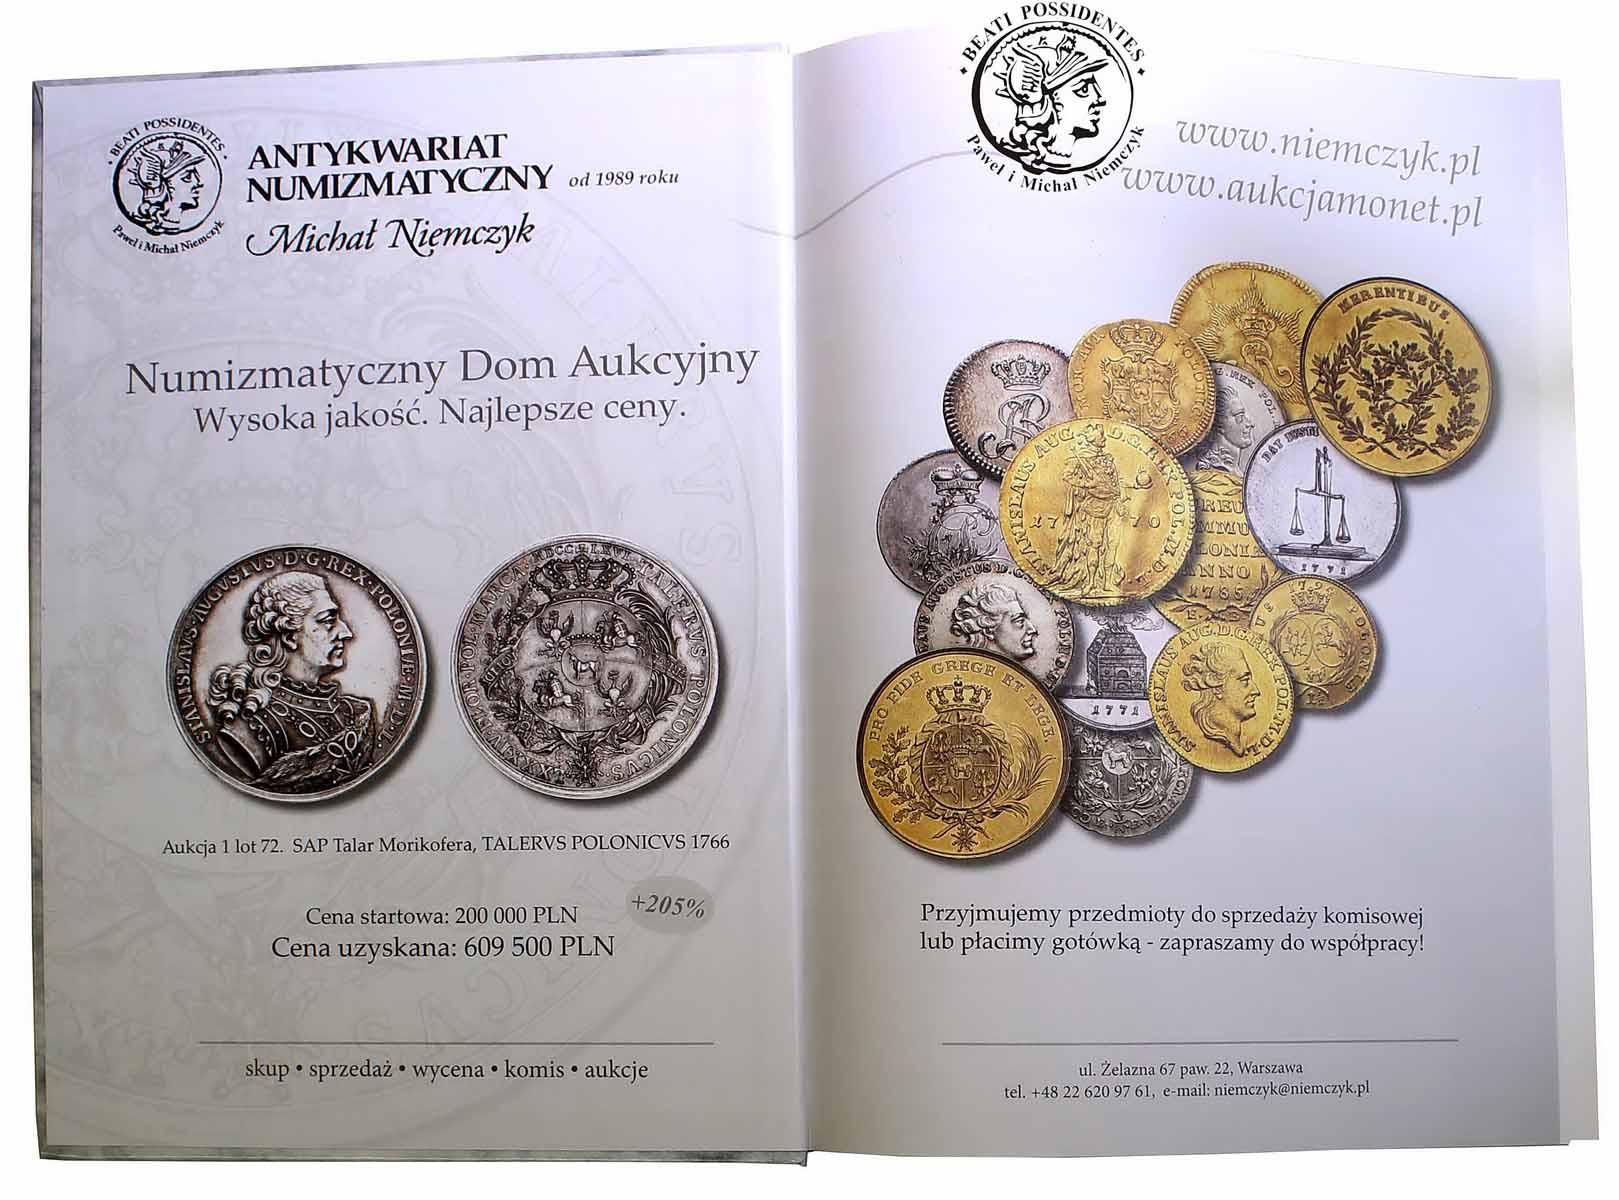 Katalog J. Parchimowicz i M. Brzeziński Monety Stanisława Augusta Poniatowskiego